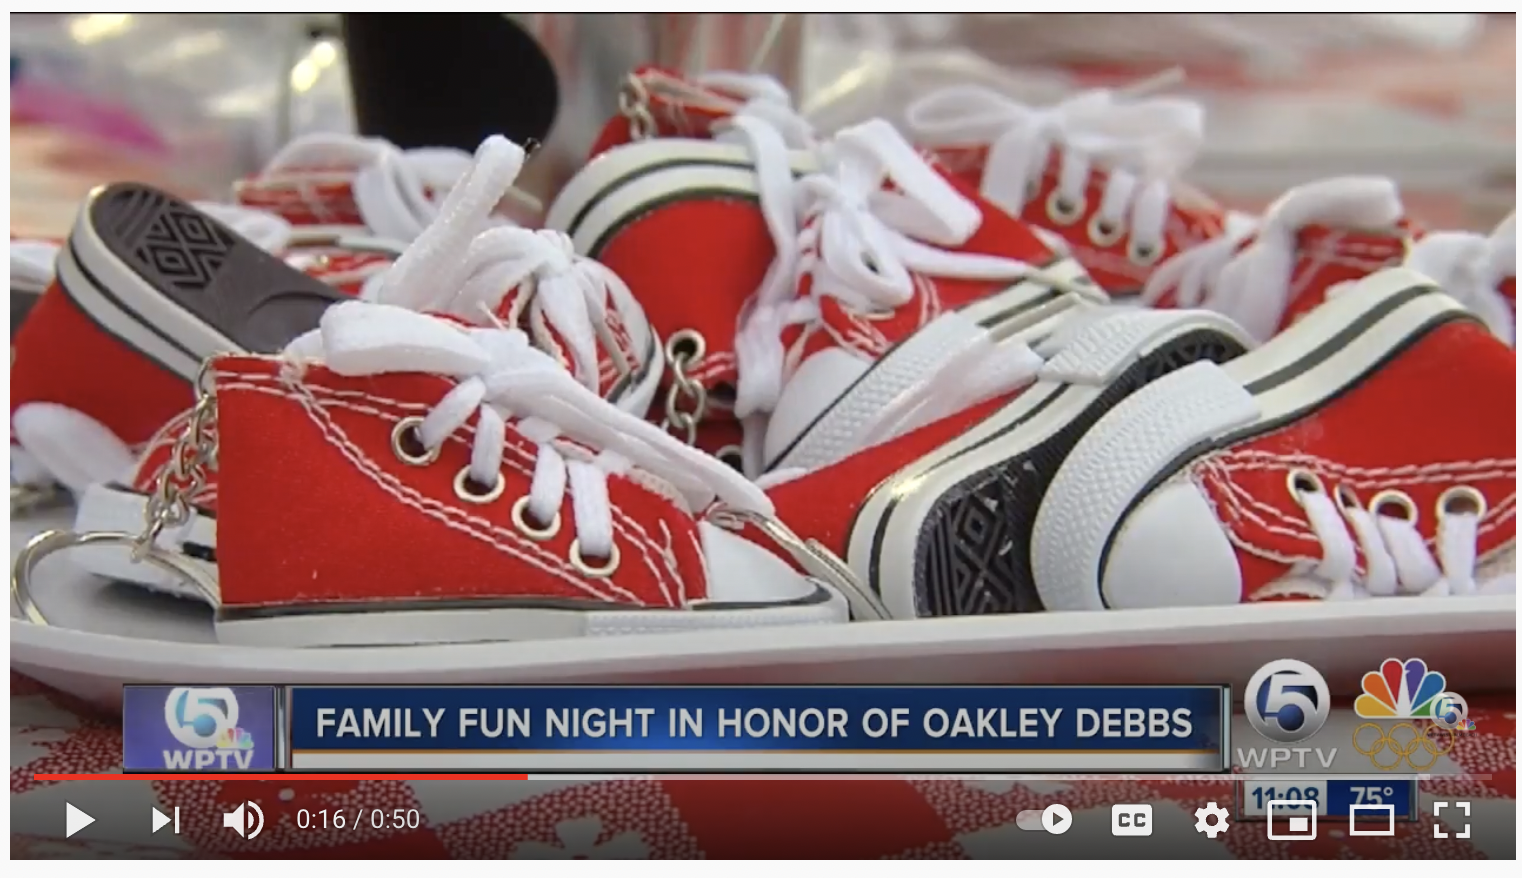 WPTV 5 Family Fun Night in Honor of Oakley Debbs